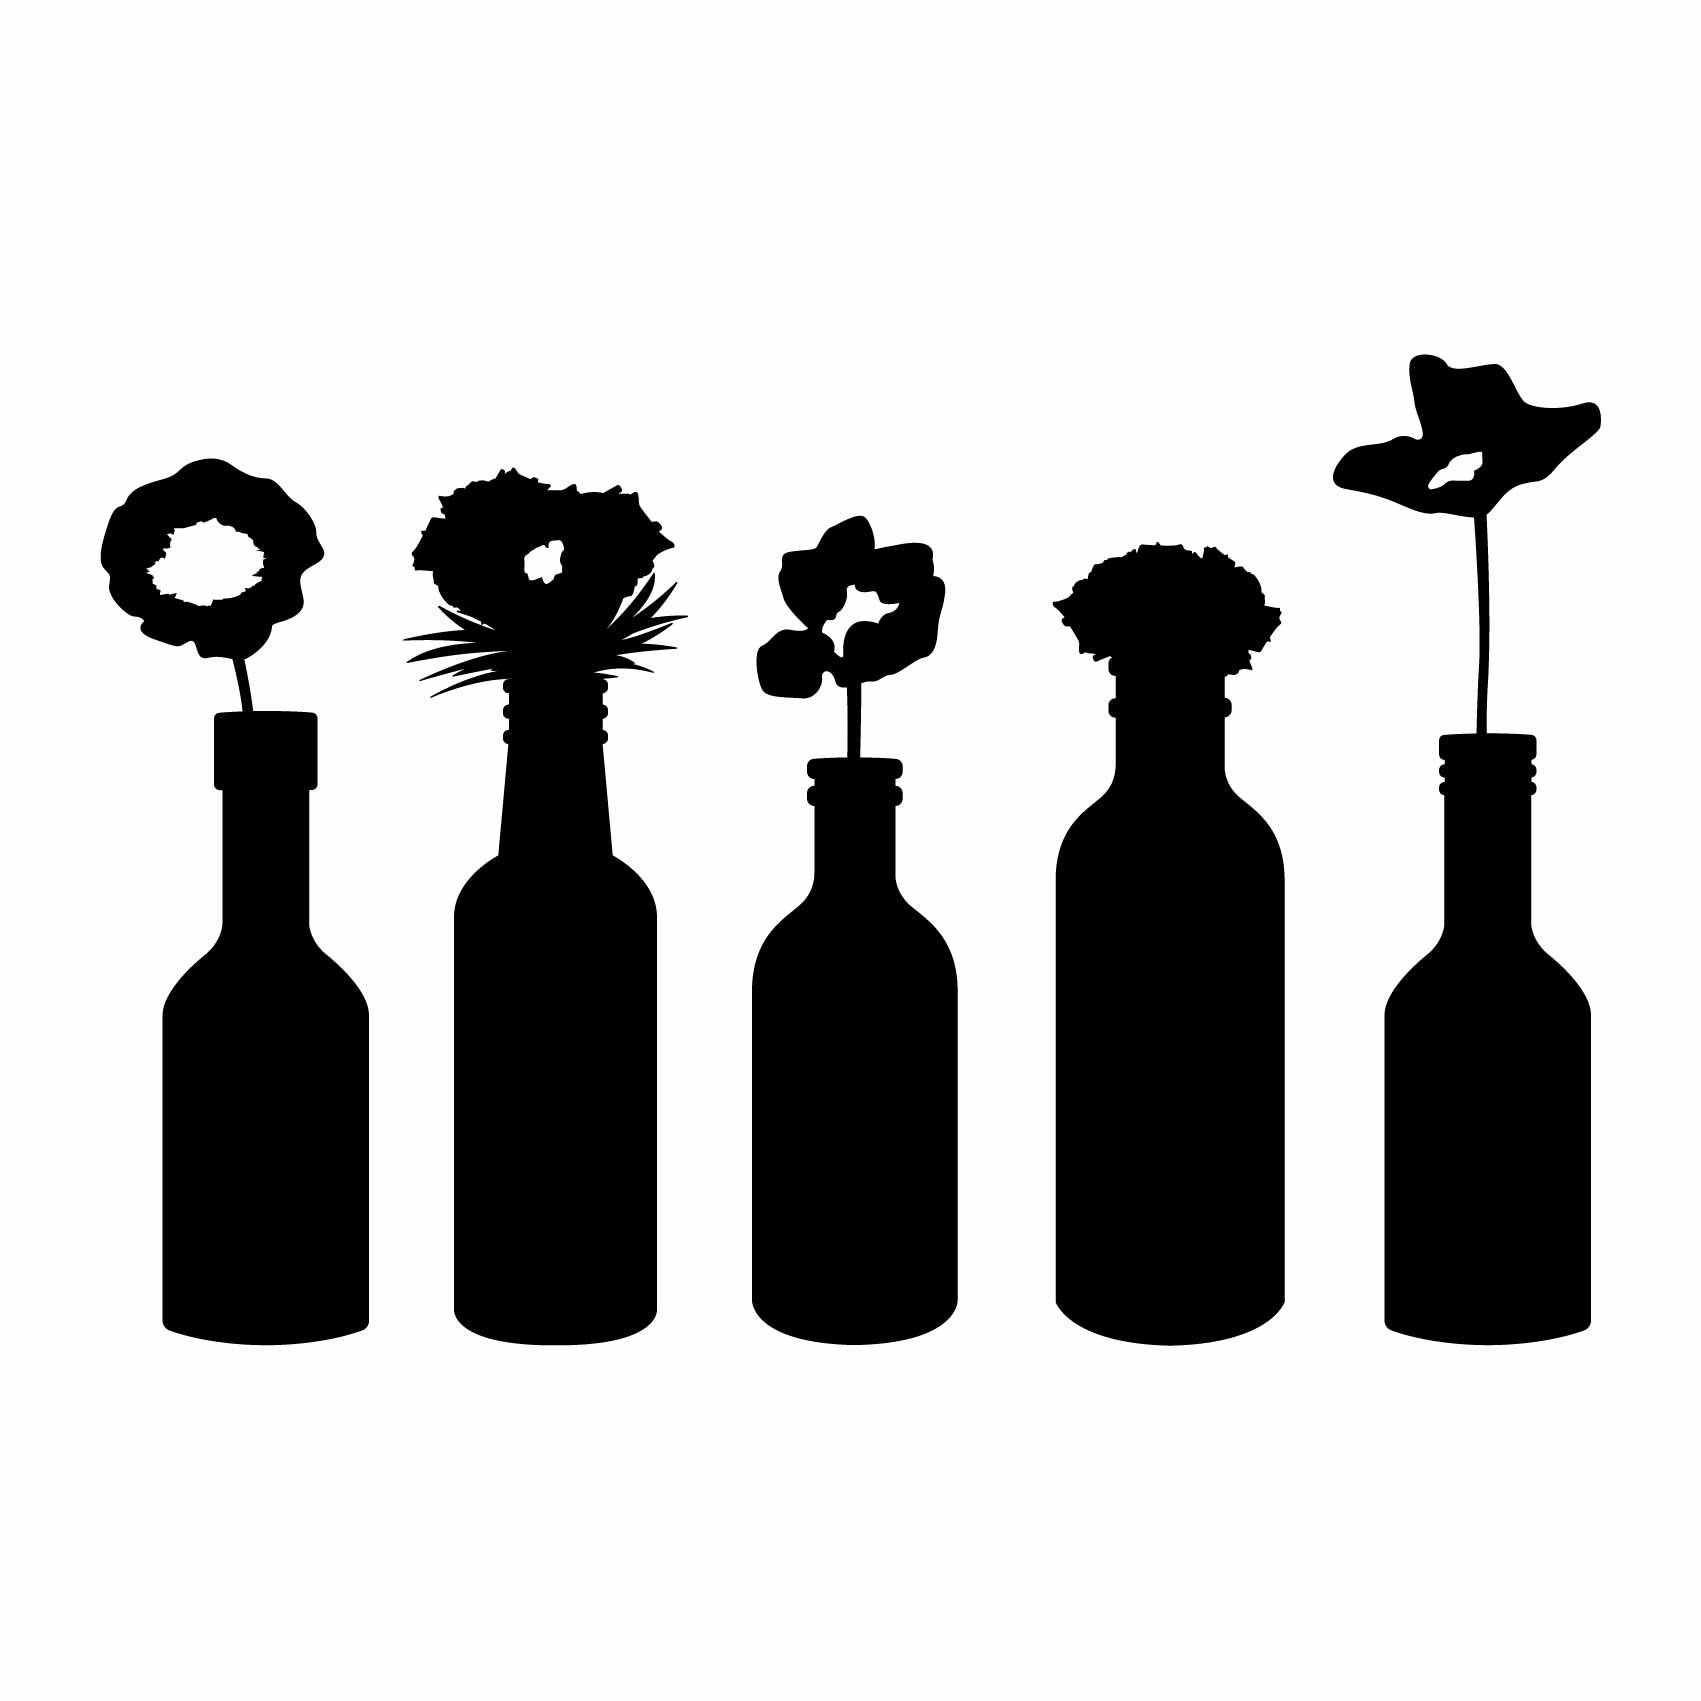 stickers-vase-fleurs-ref17fleur-stickers-muraux-fleurs-autocollant-deco-salon-chambre-nature-sticker-mural-fleur-(2)